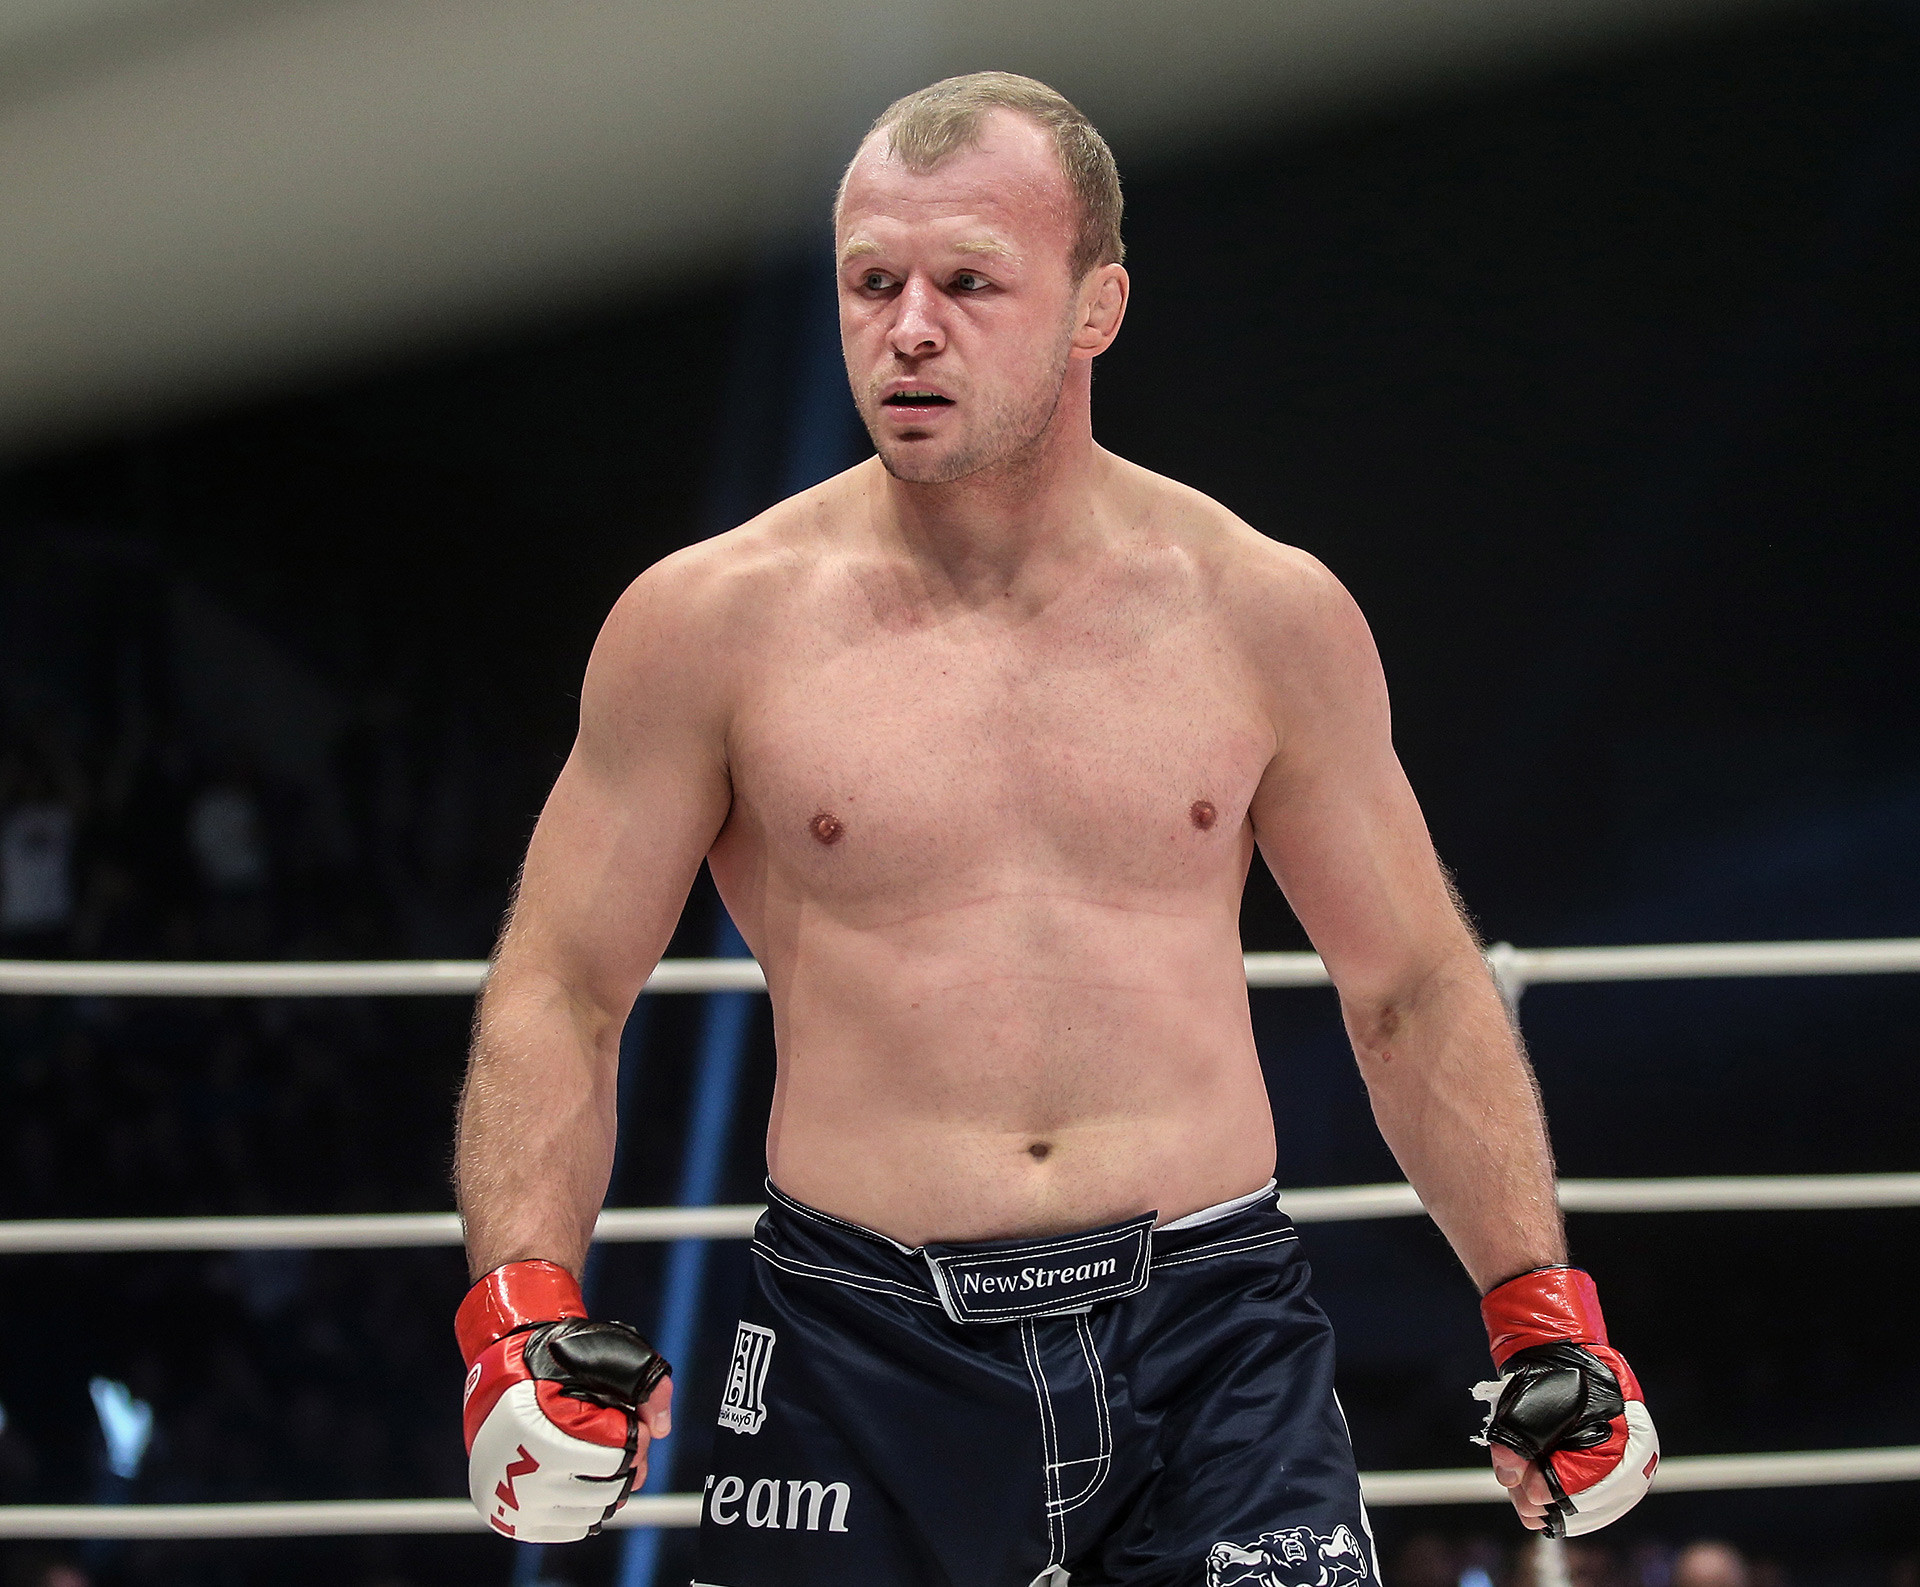 Conheça 5 dos mais temidos lutadores russos de MMA - Russia Beyond BR